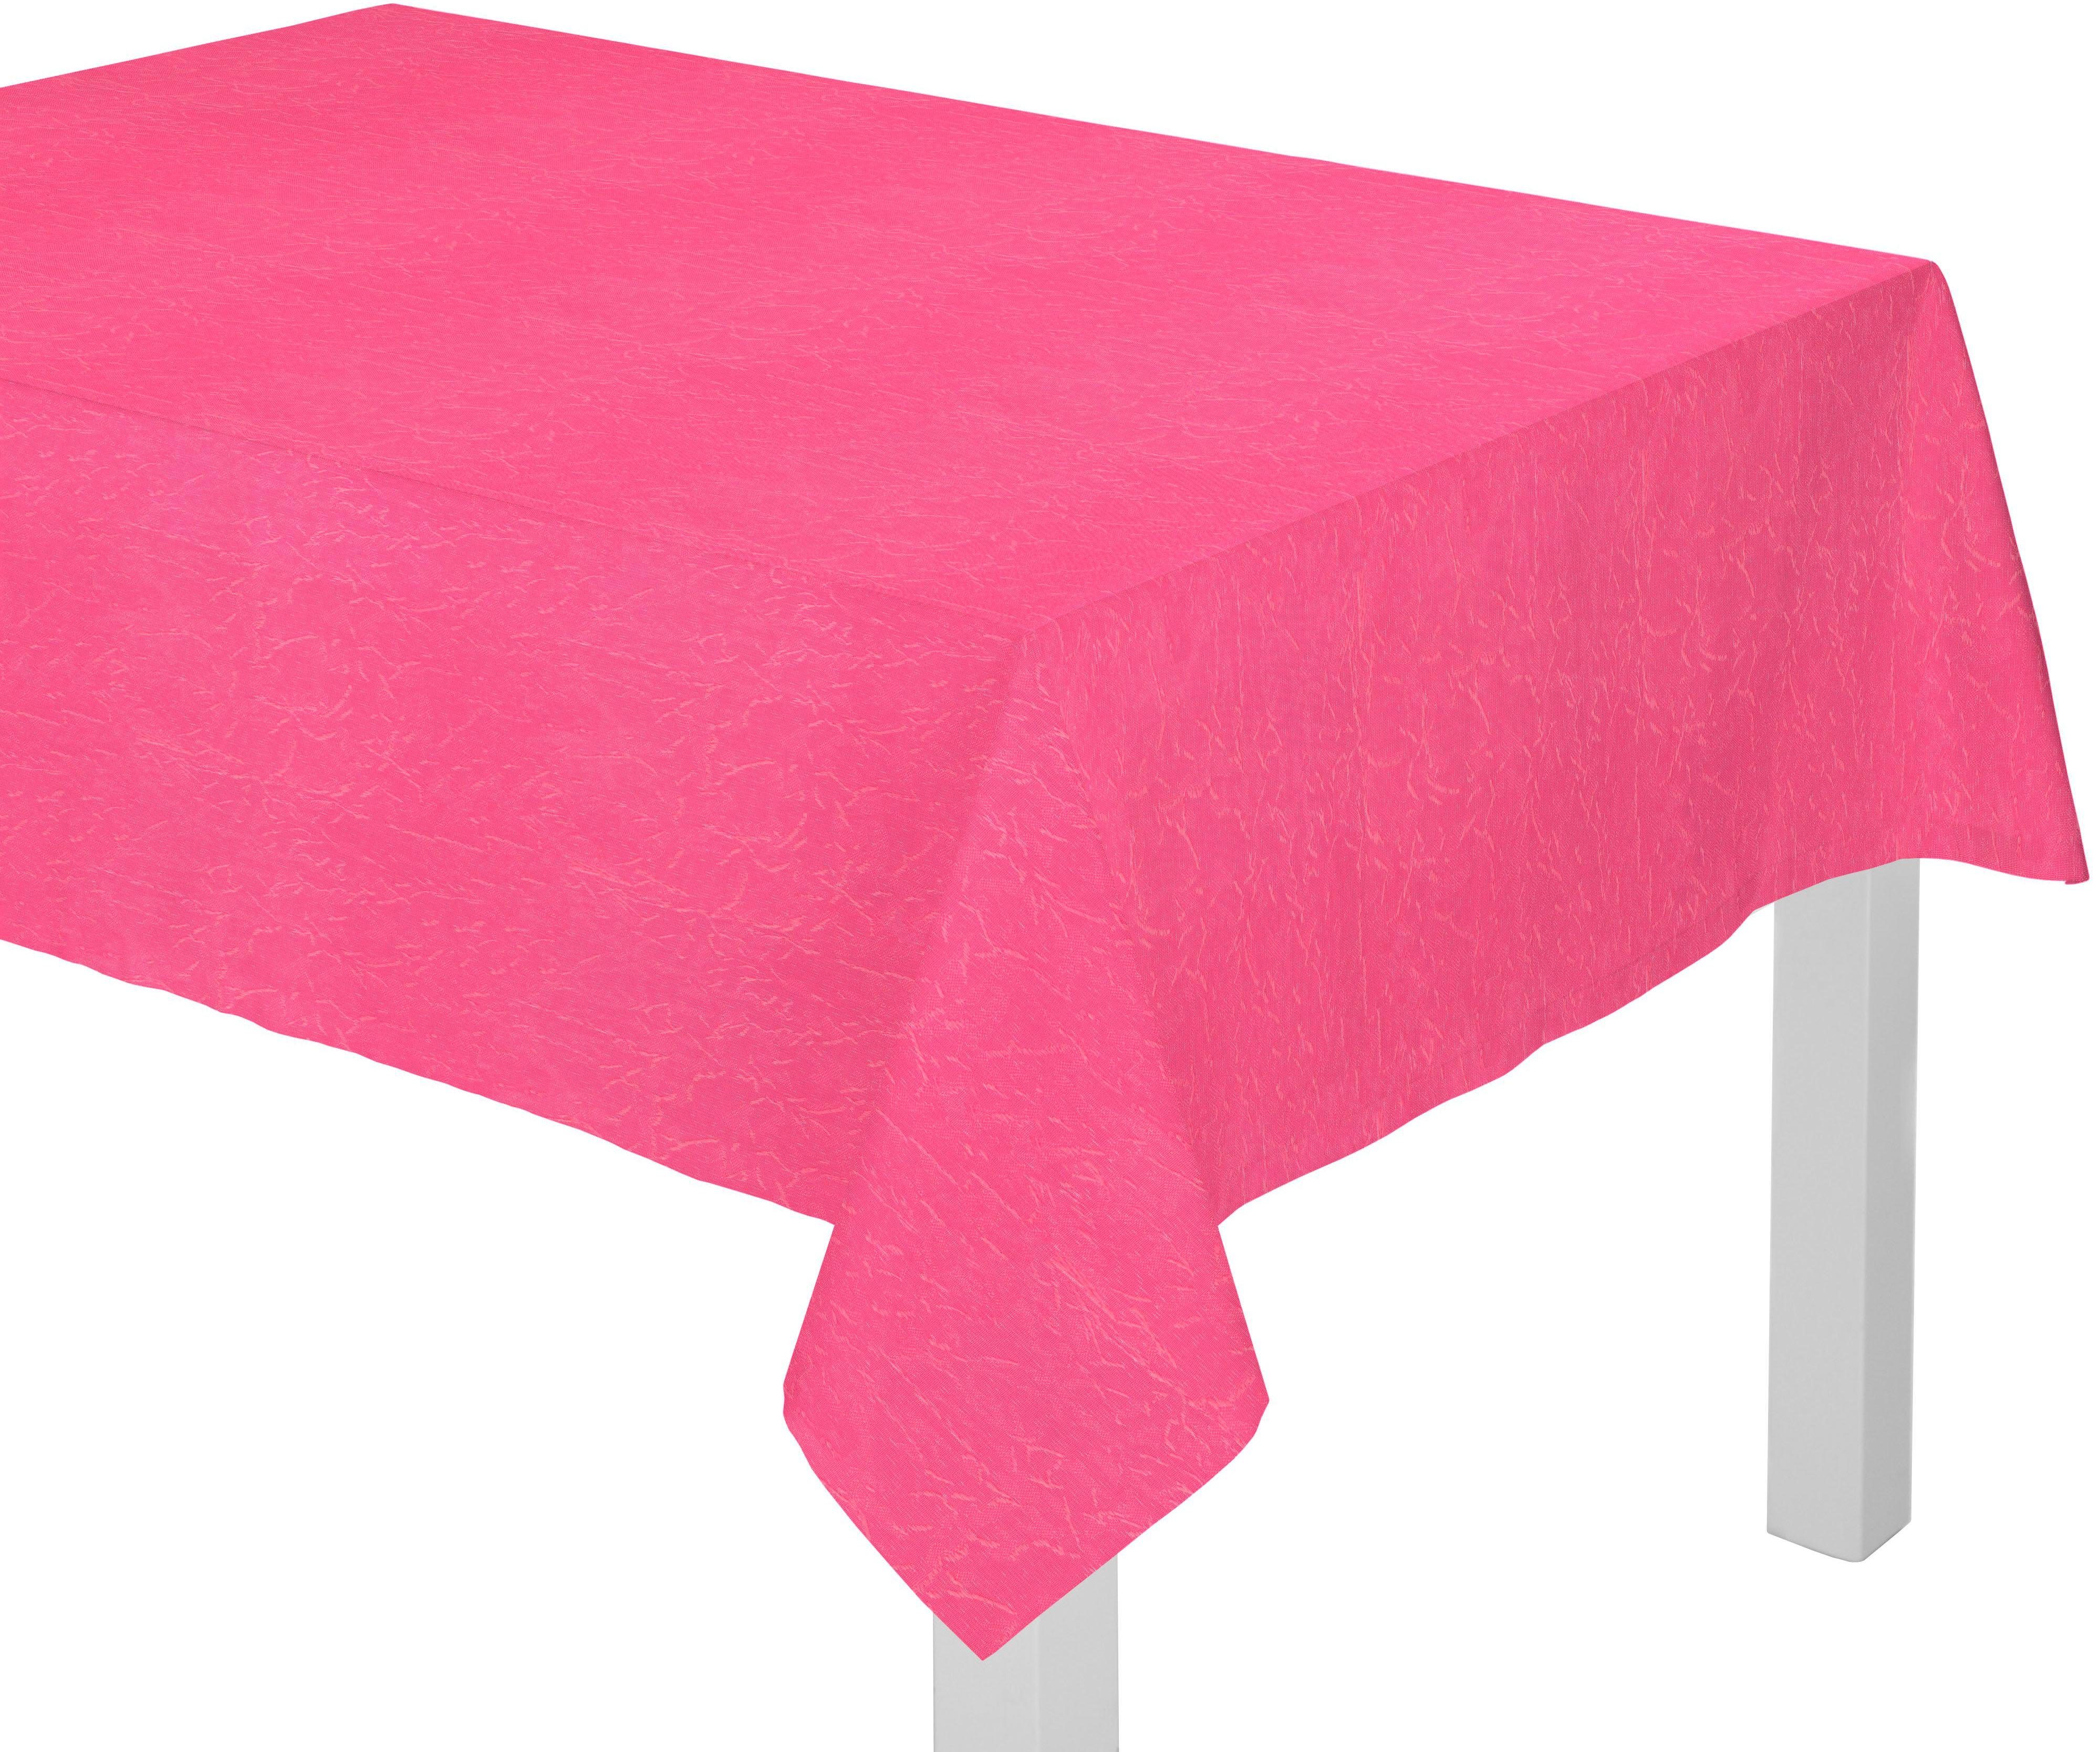 Wirth Tischdecke Lahnstein pink